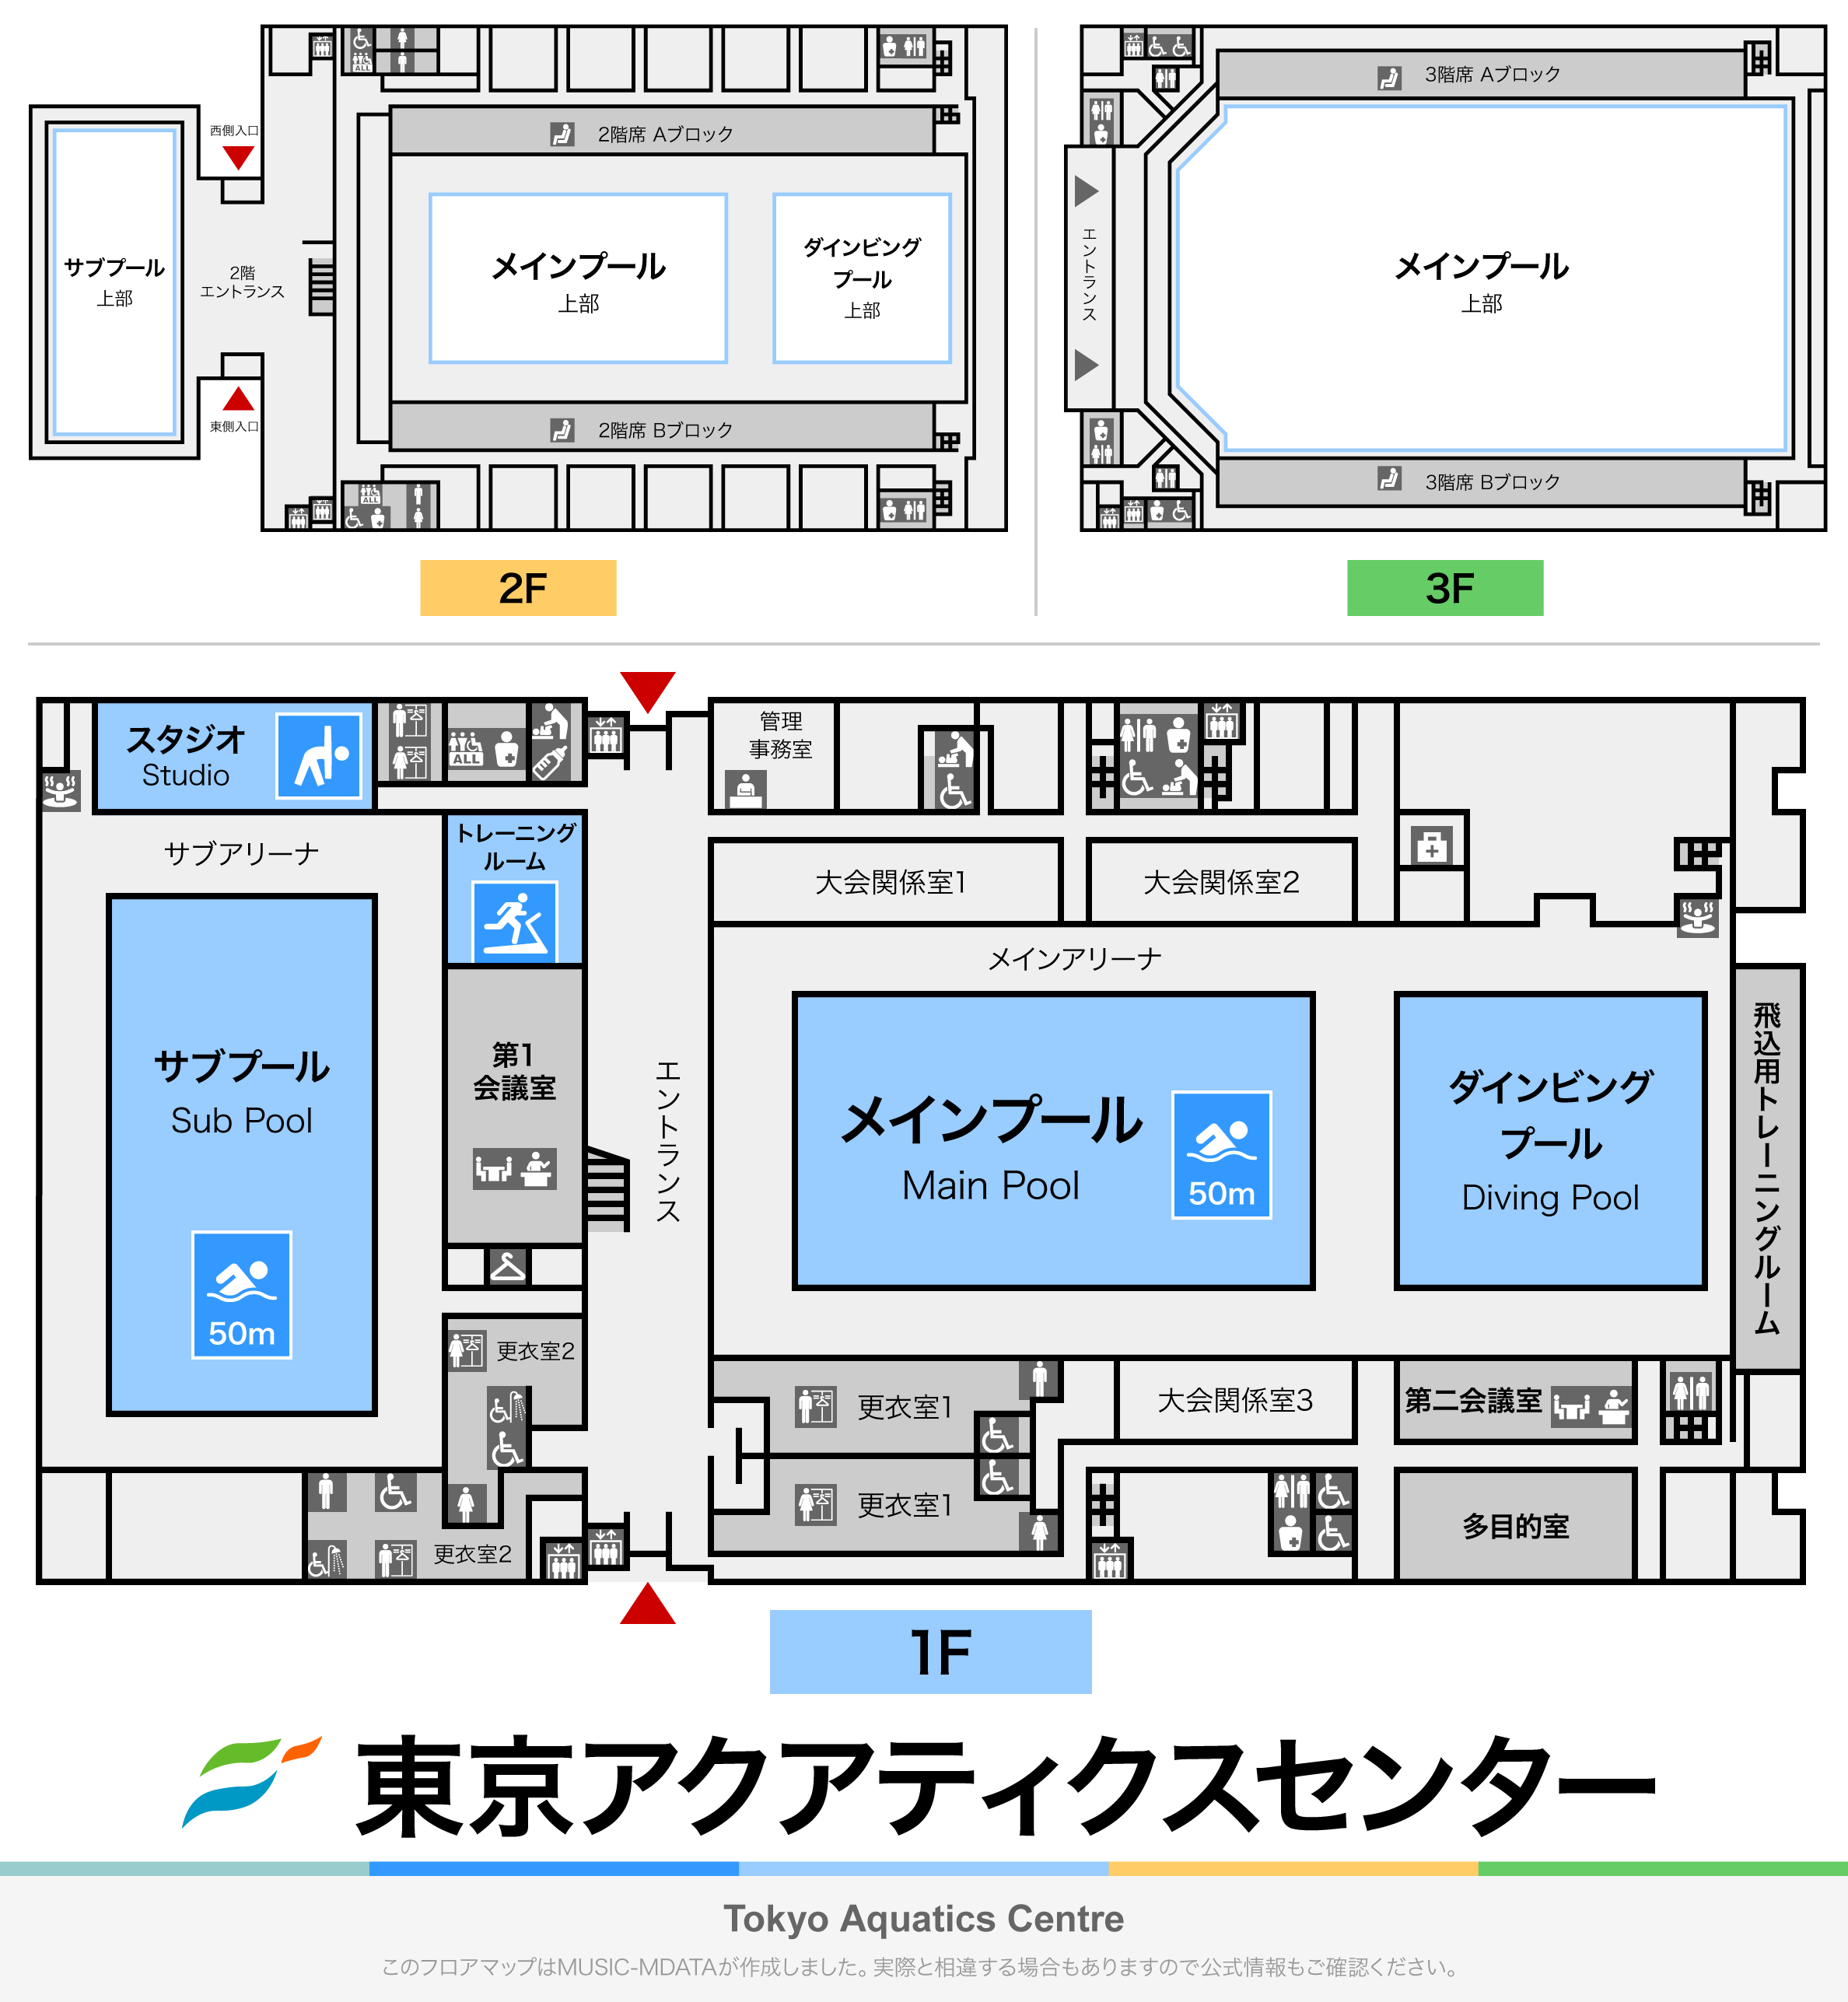 東京アクアティクスセンターのフロアマップ・体育館